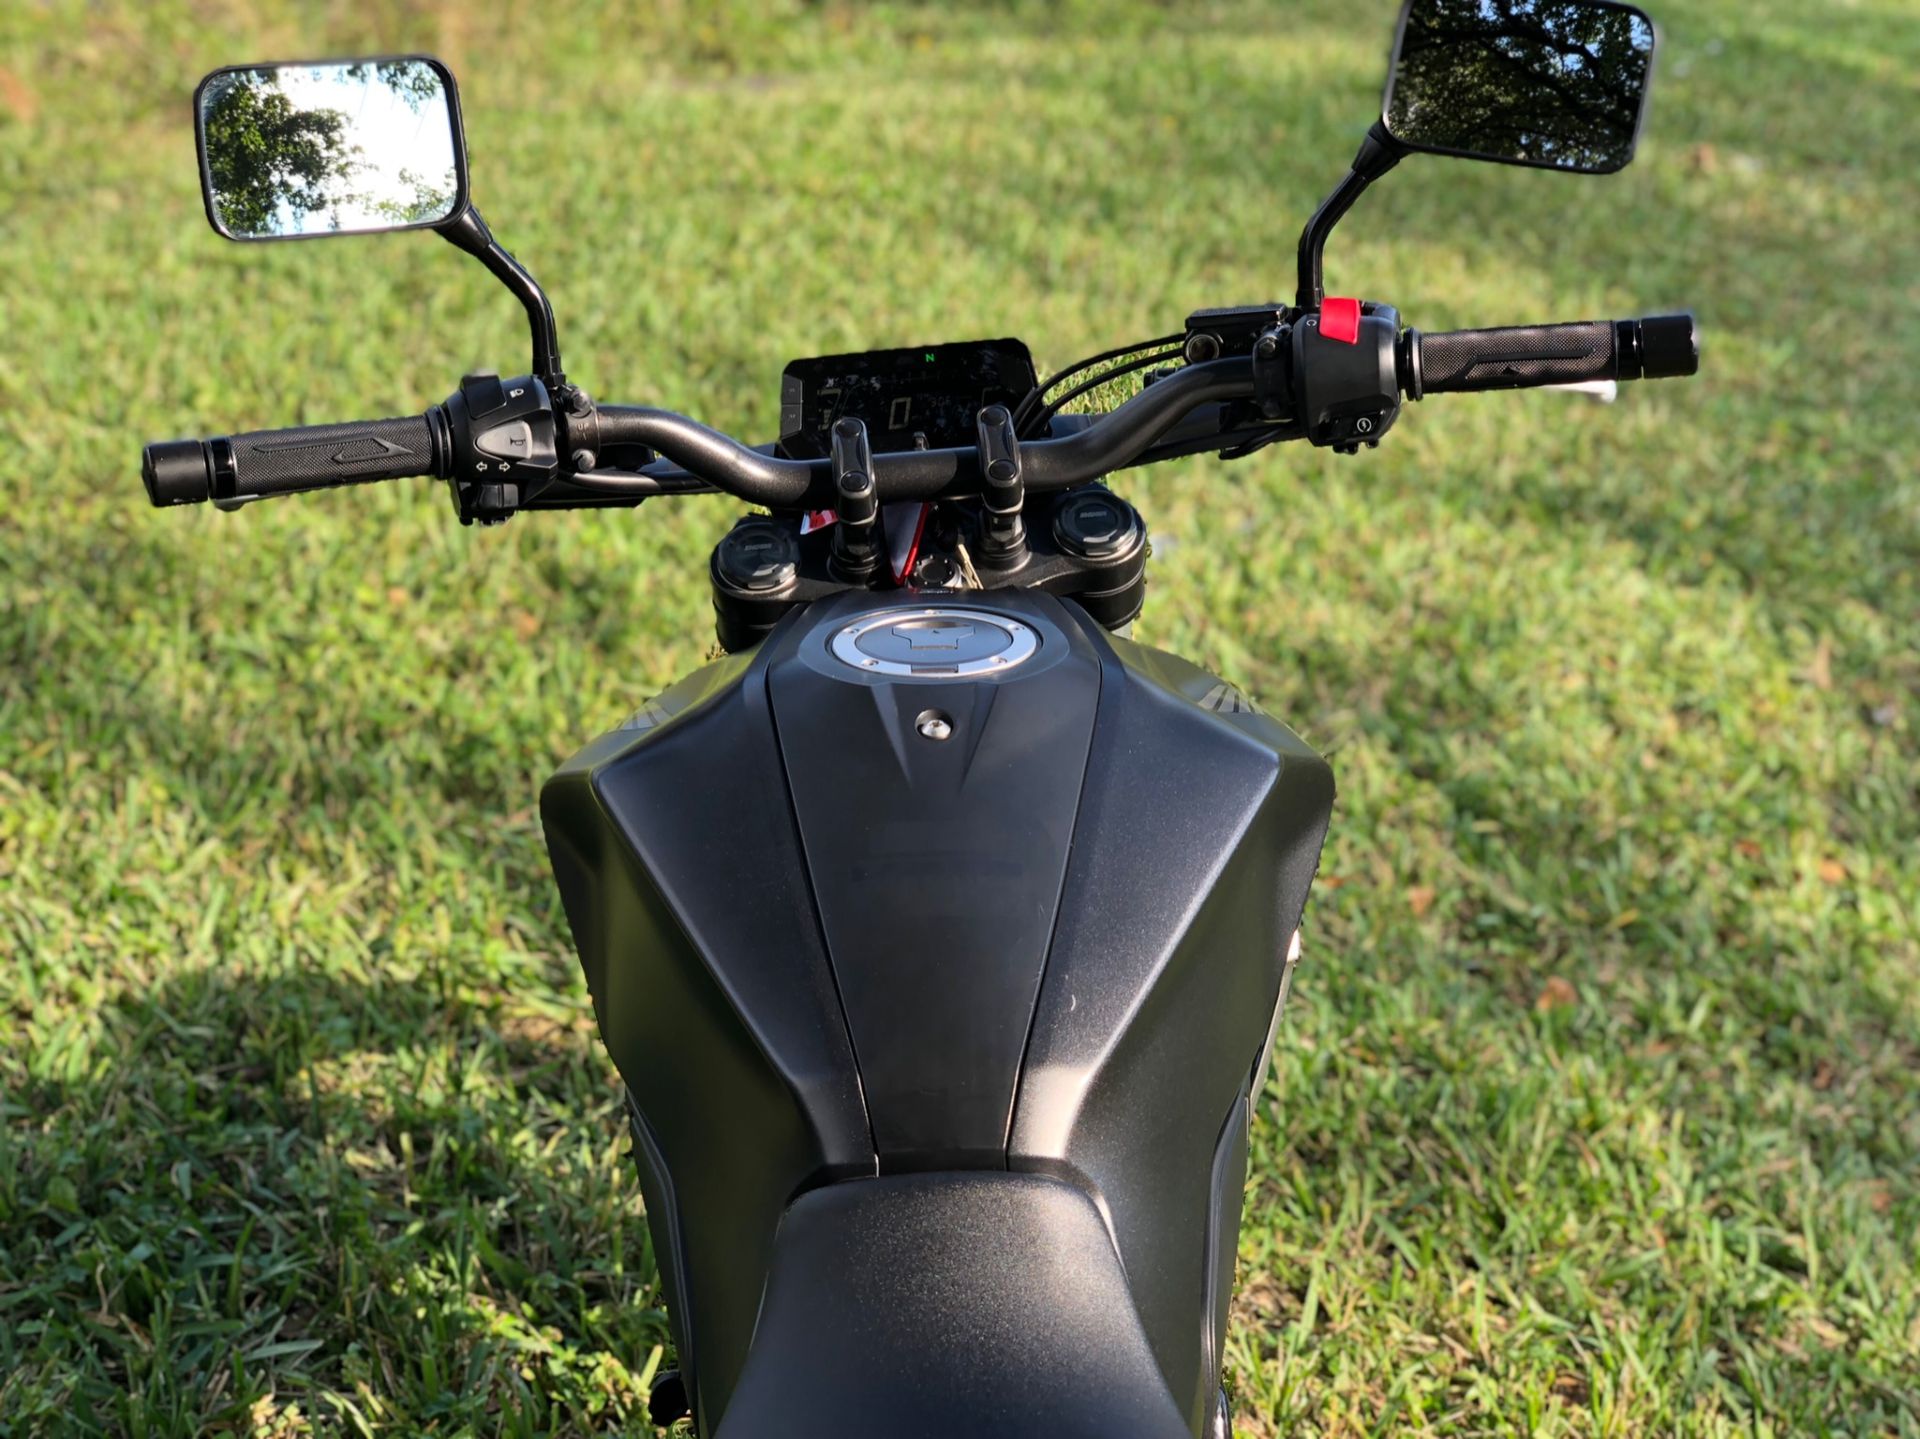 2019 Honda CB300R in North Miami Beach, Florida - Photo 11